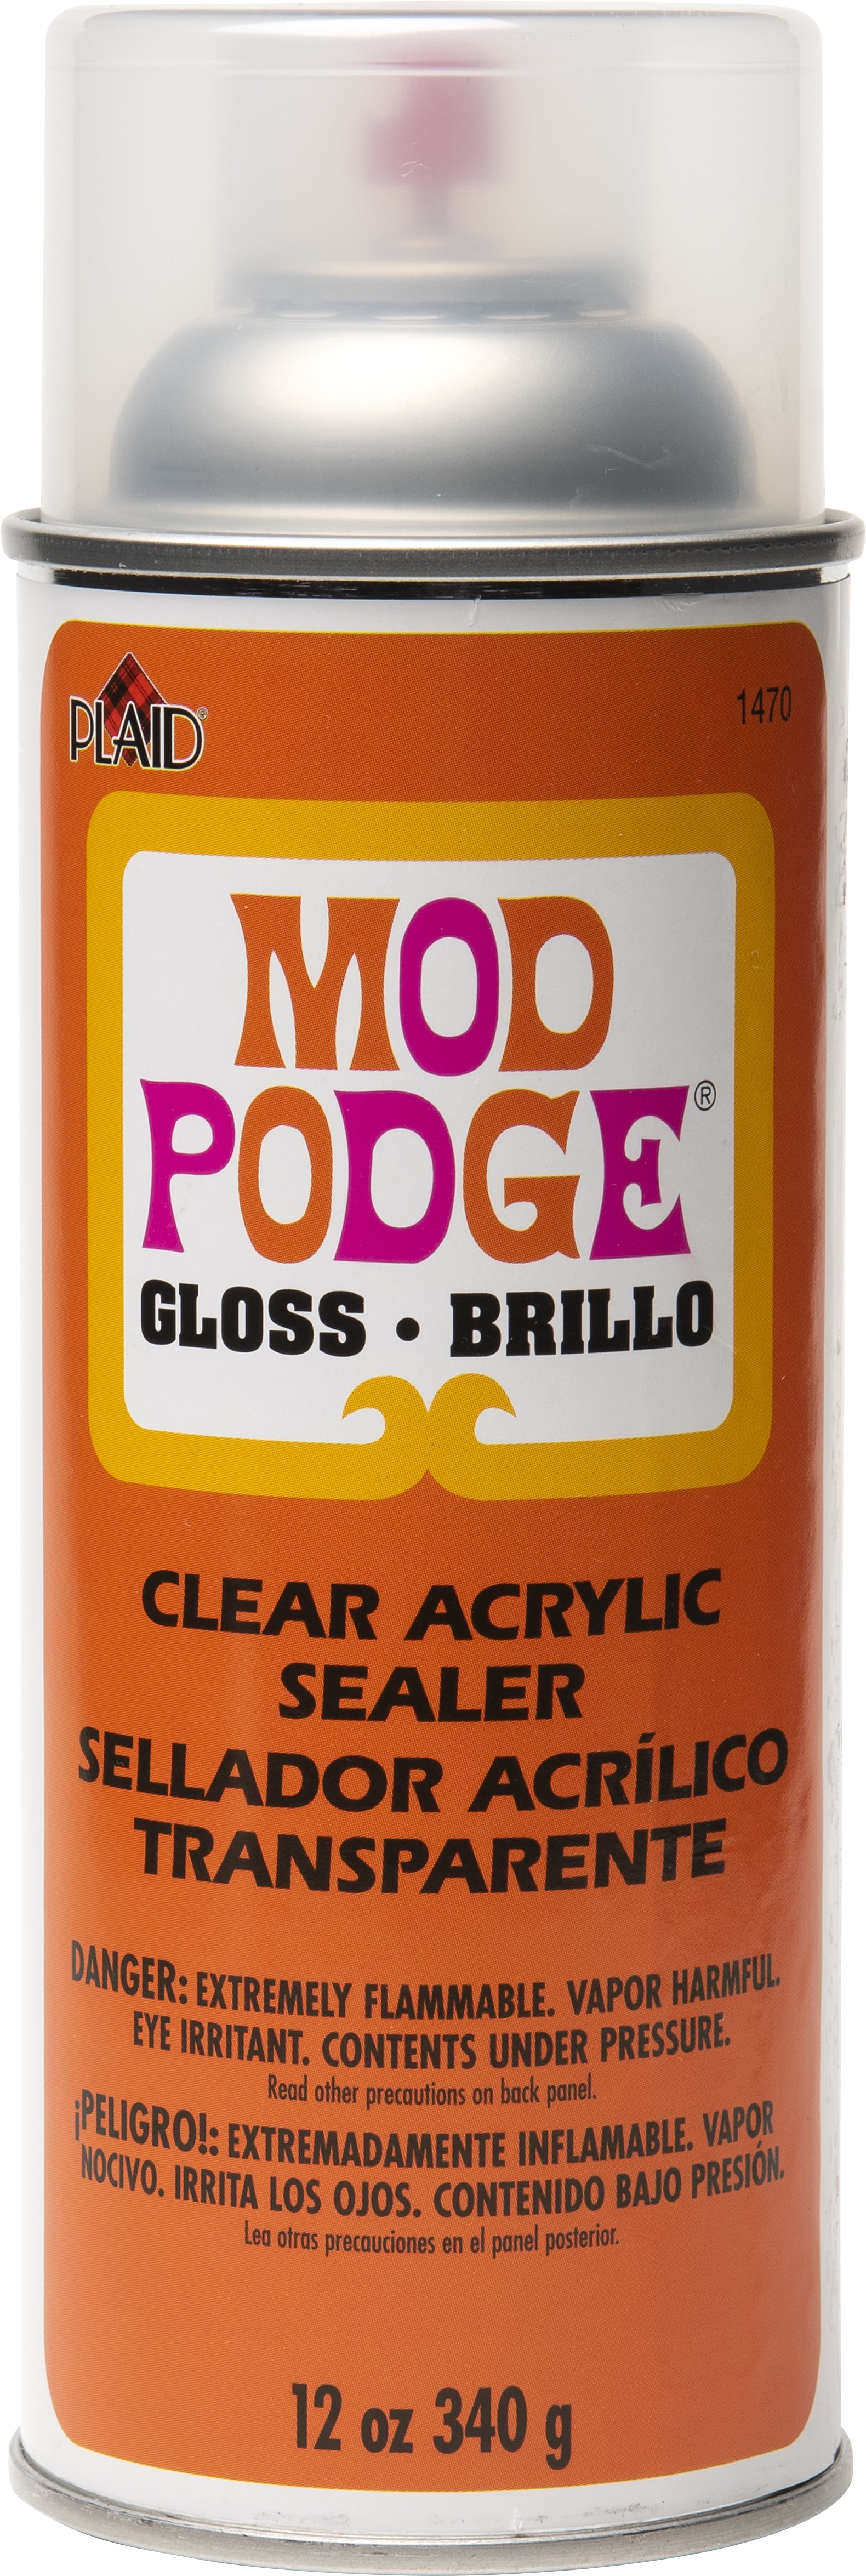  Mod Podge Acrylic Sealer (11-Ounce), 1450 Super Gloss